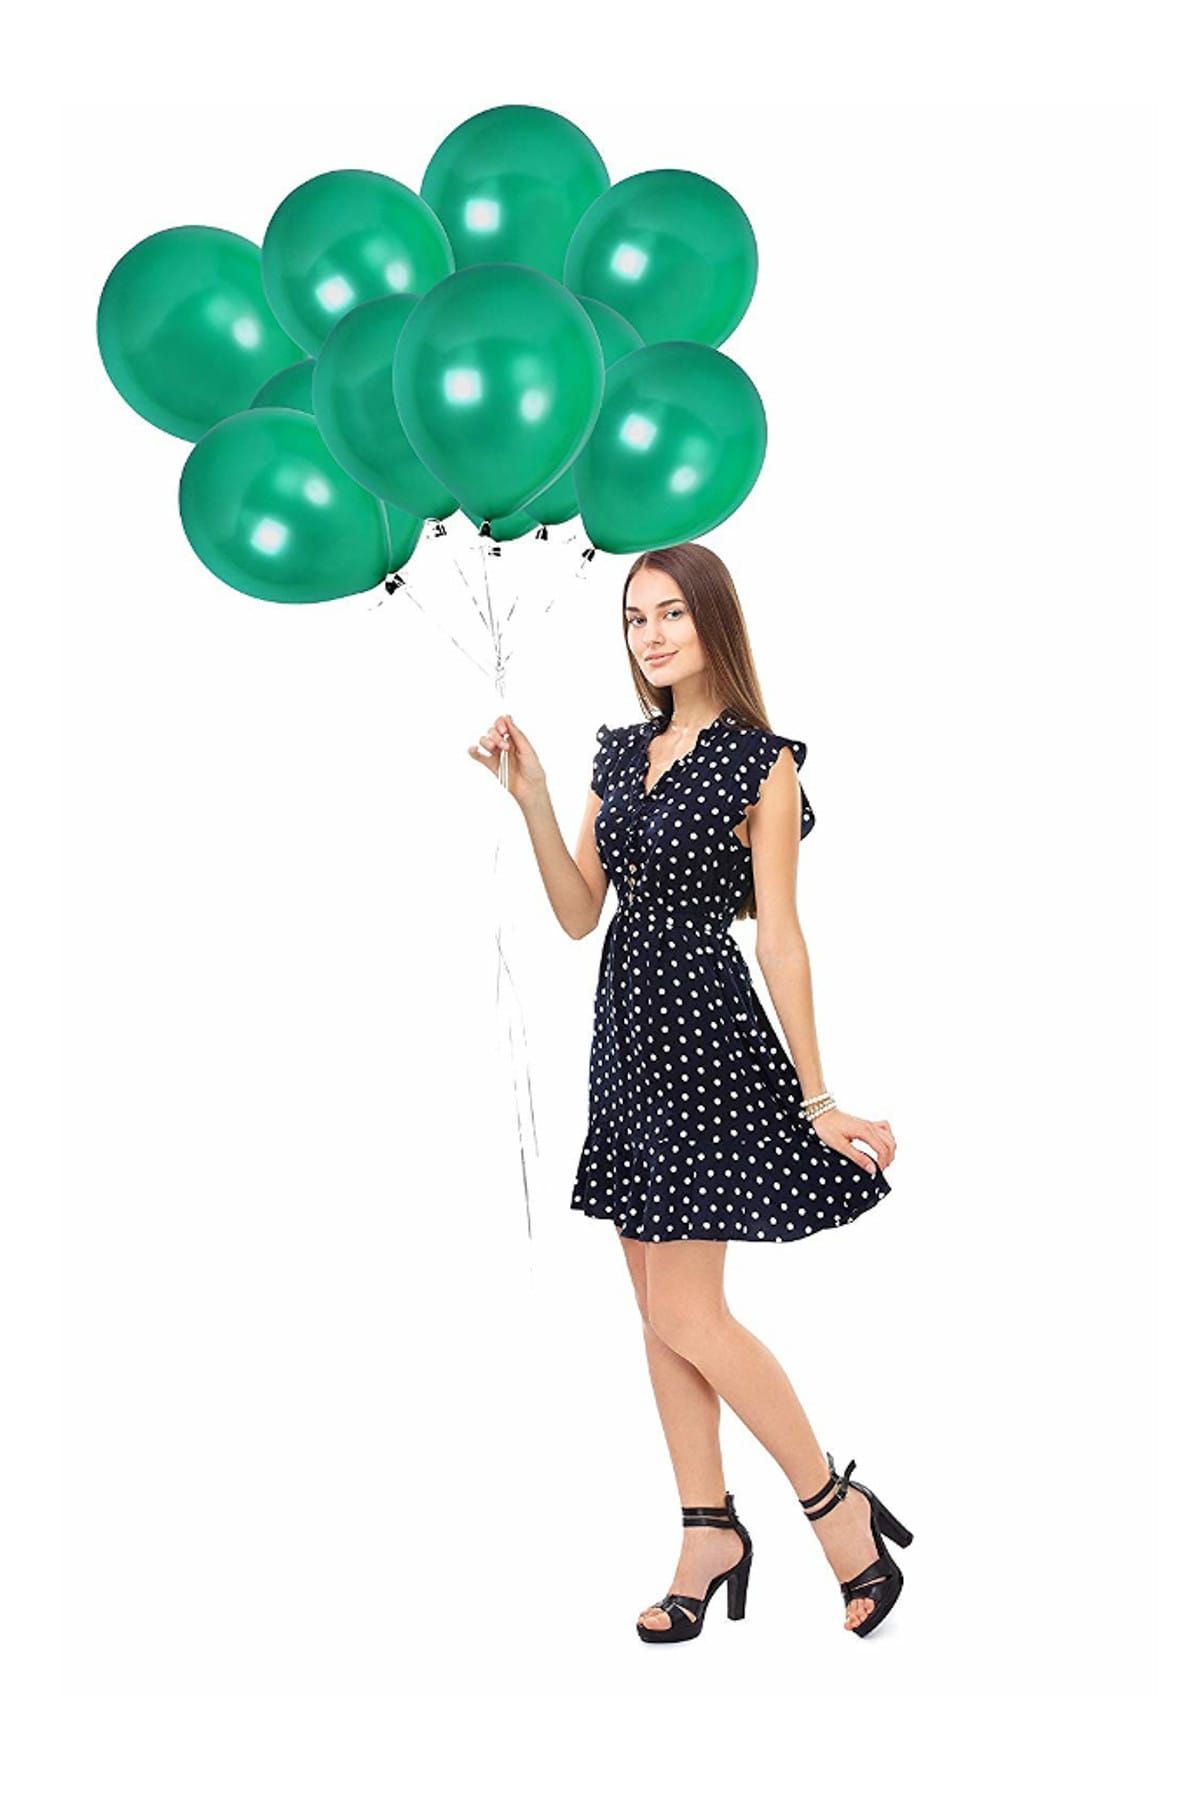 Magic Hobby Yeşil Renk Metalik Balon 10 Adet ( 10'Lu Paket)